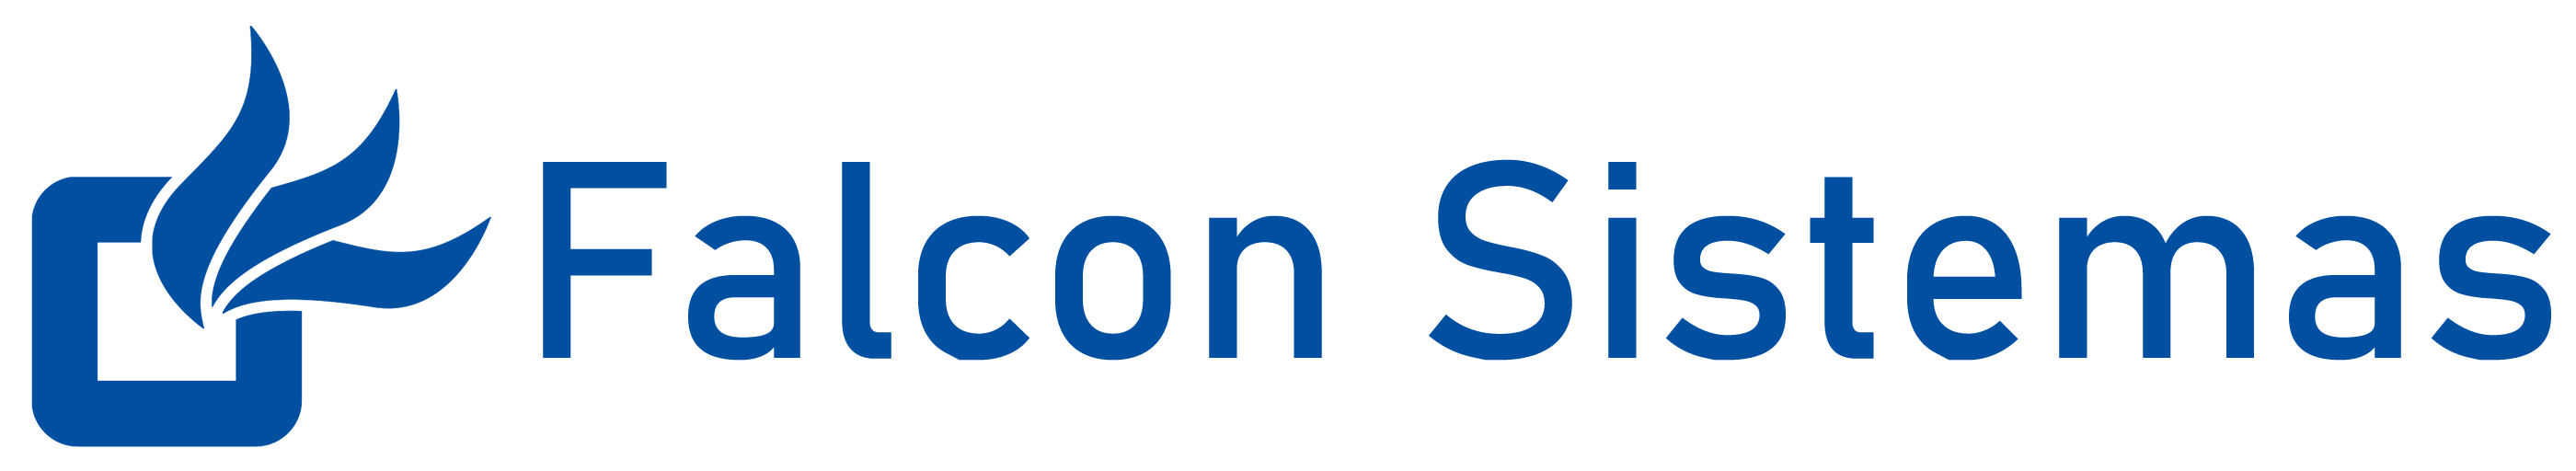 Logo Falcon Sistemas